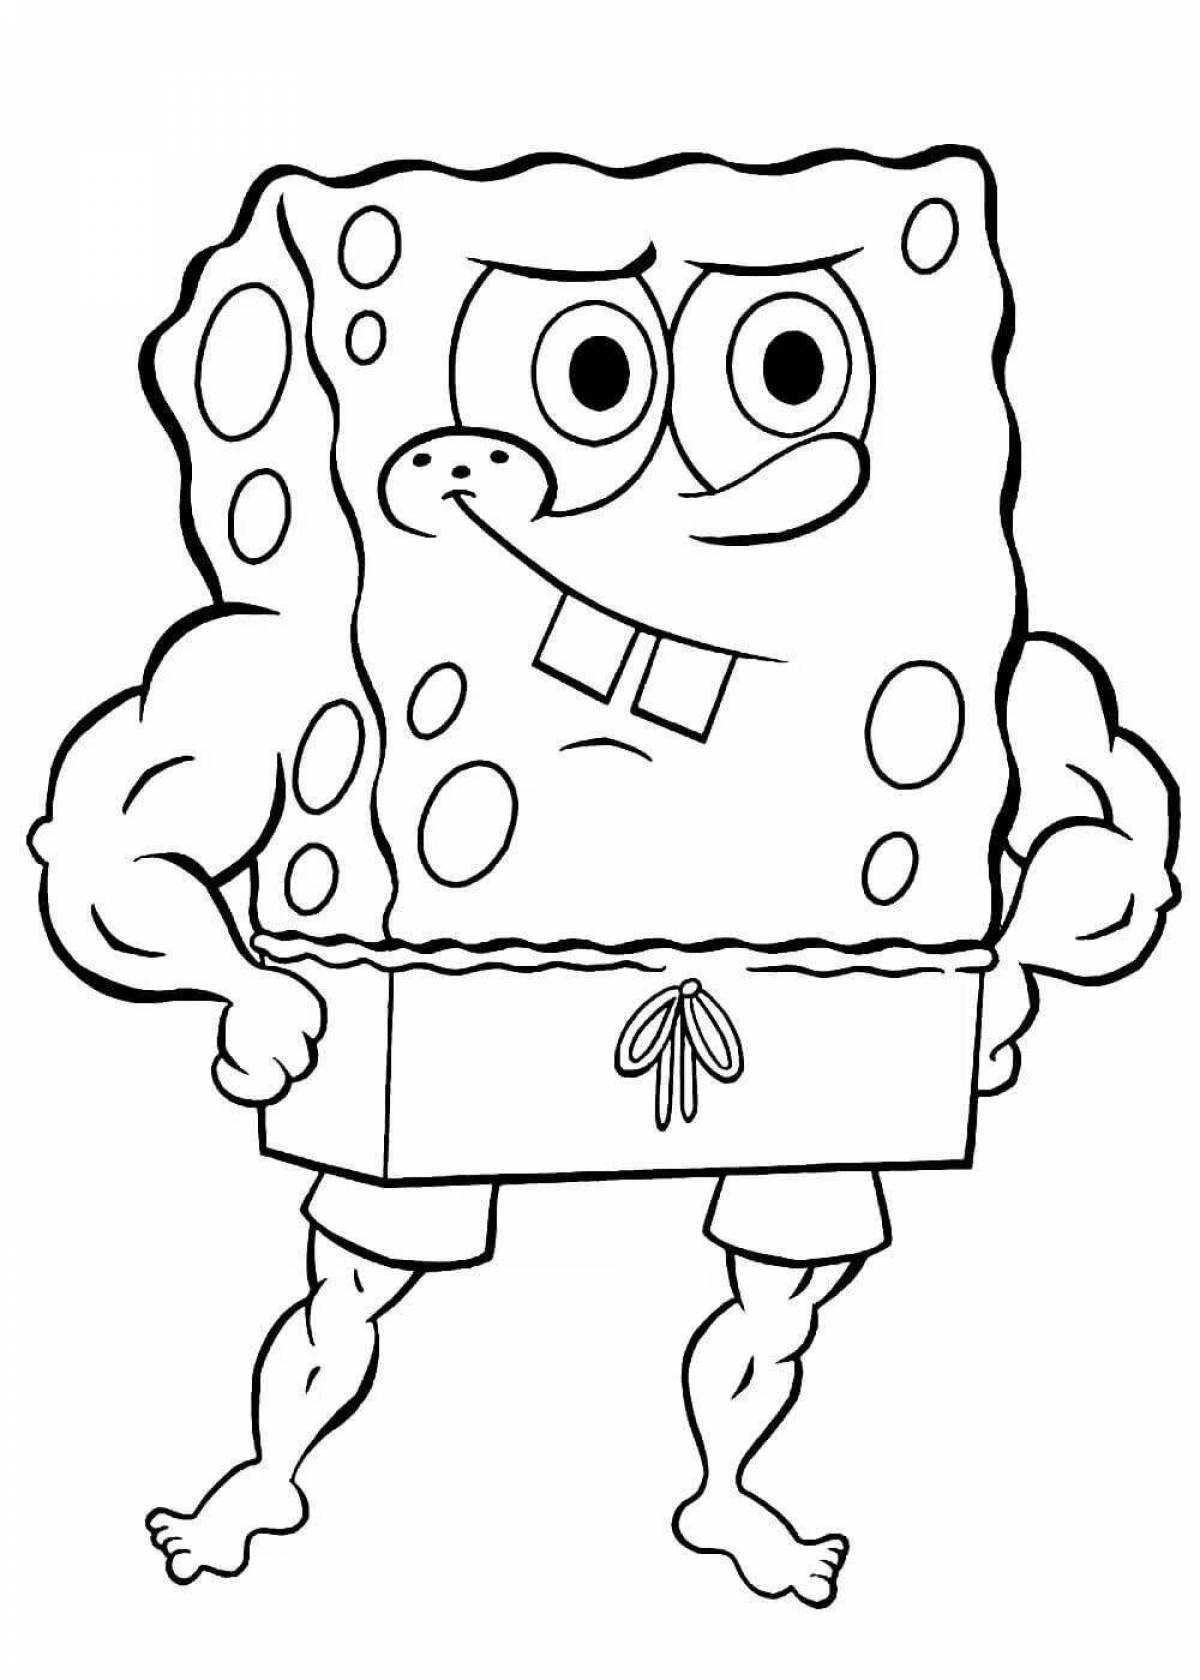 Adorable spongebob coloring book for boys